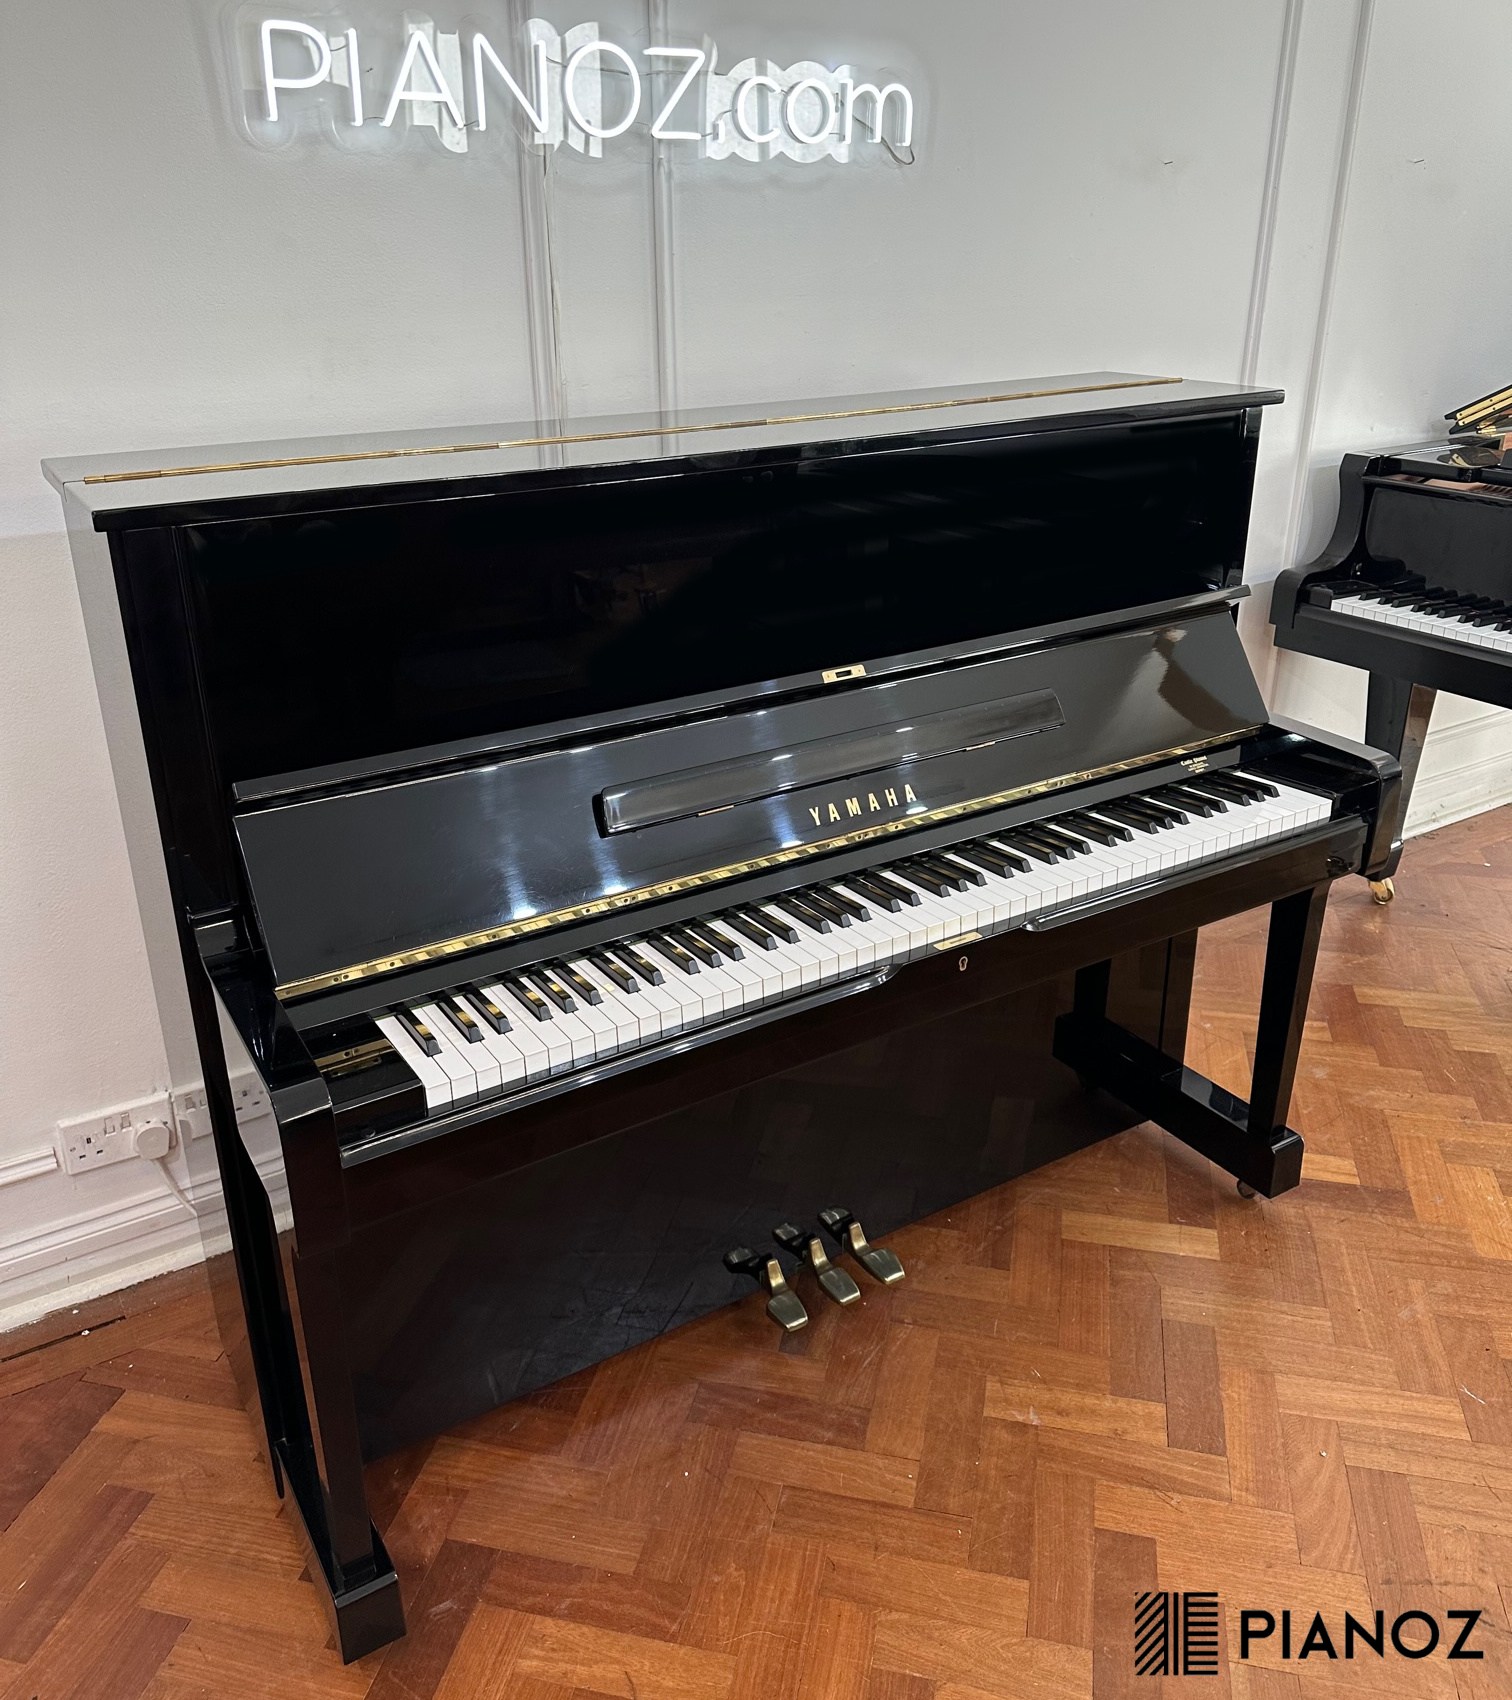 Yamaha U1 Refurbished Upright Piano piano for sale in UK